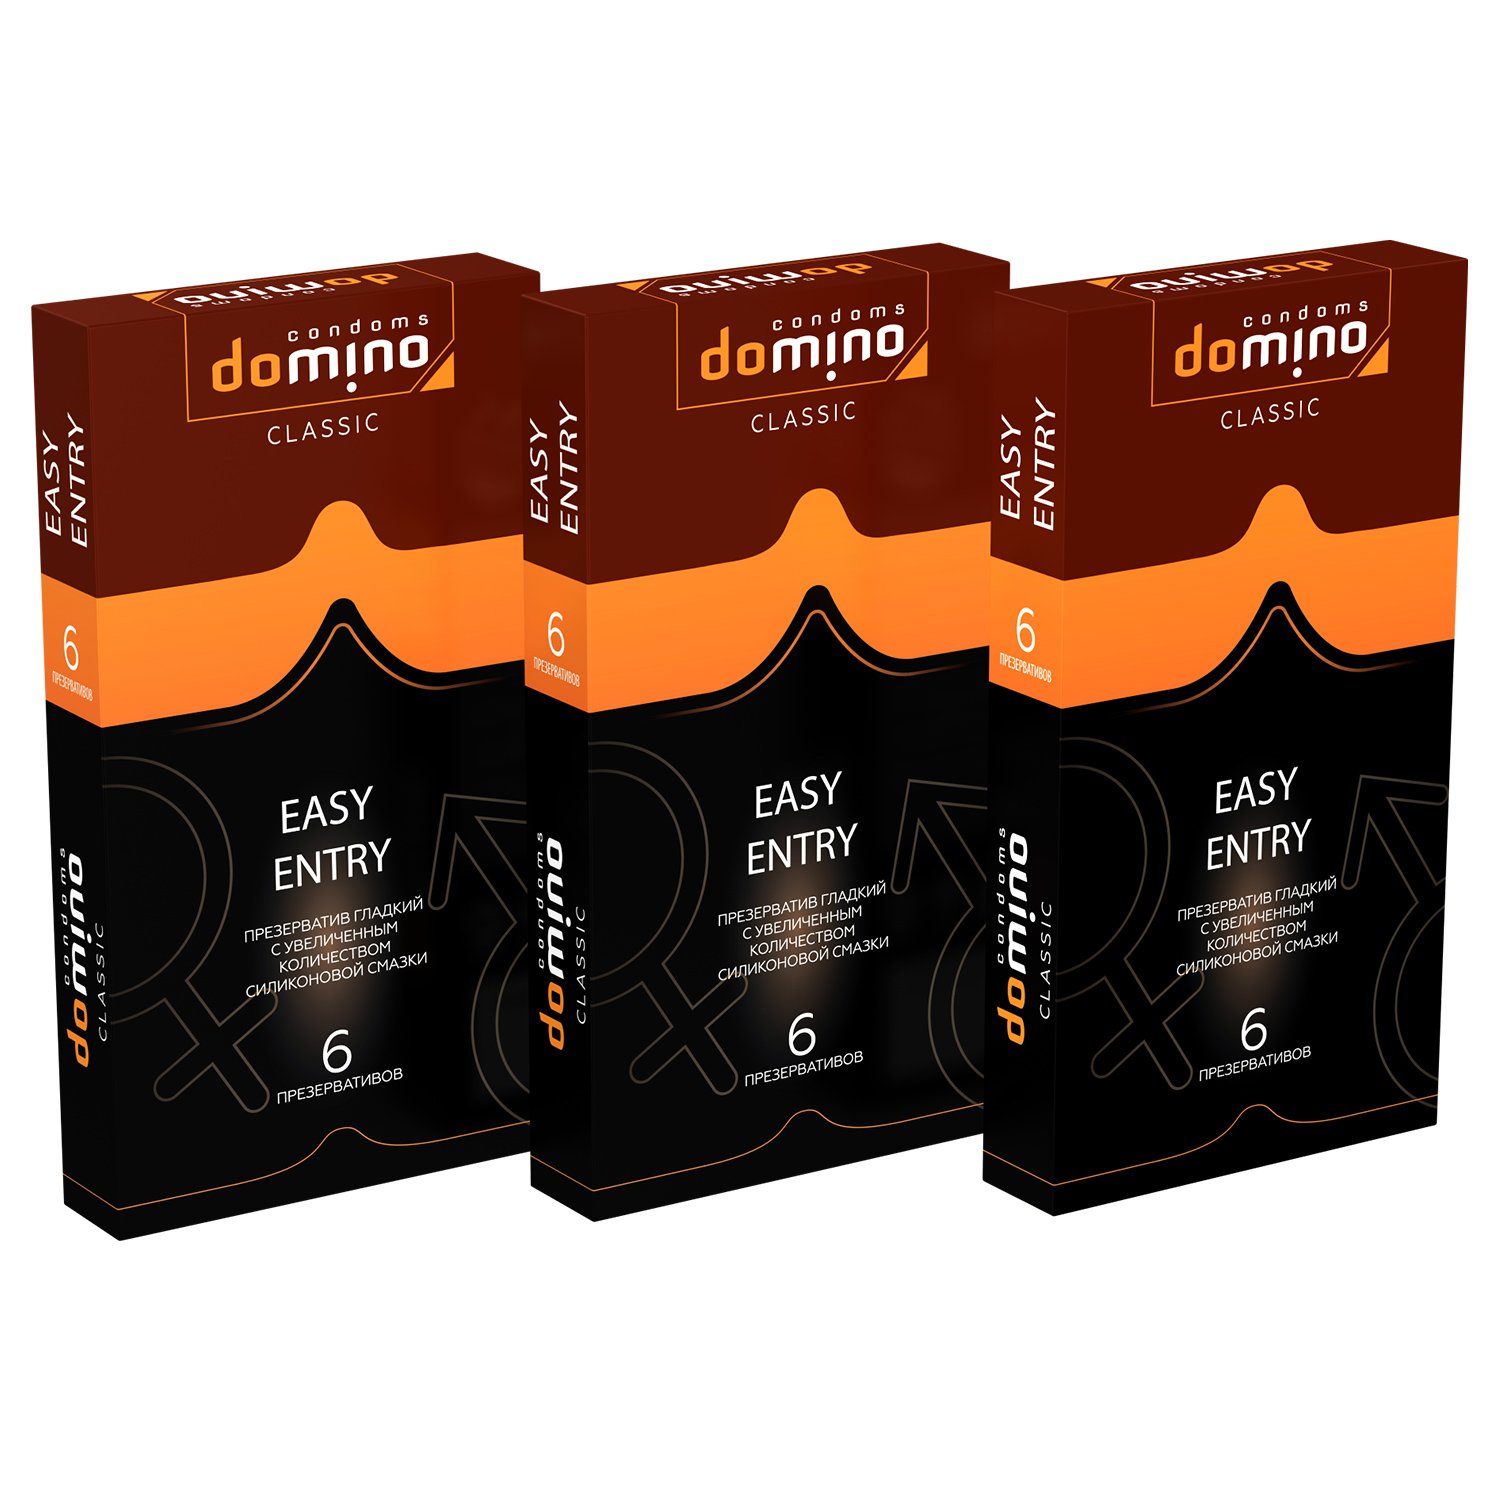 Купить Презервативы Domino Classic Easy Entry 6 шт комплект из 3 пачек, Luxe